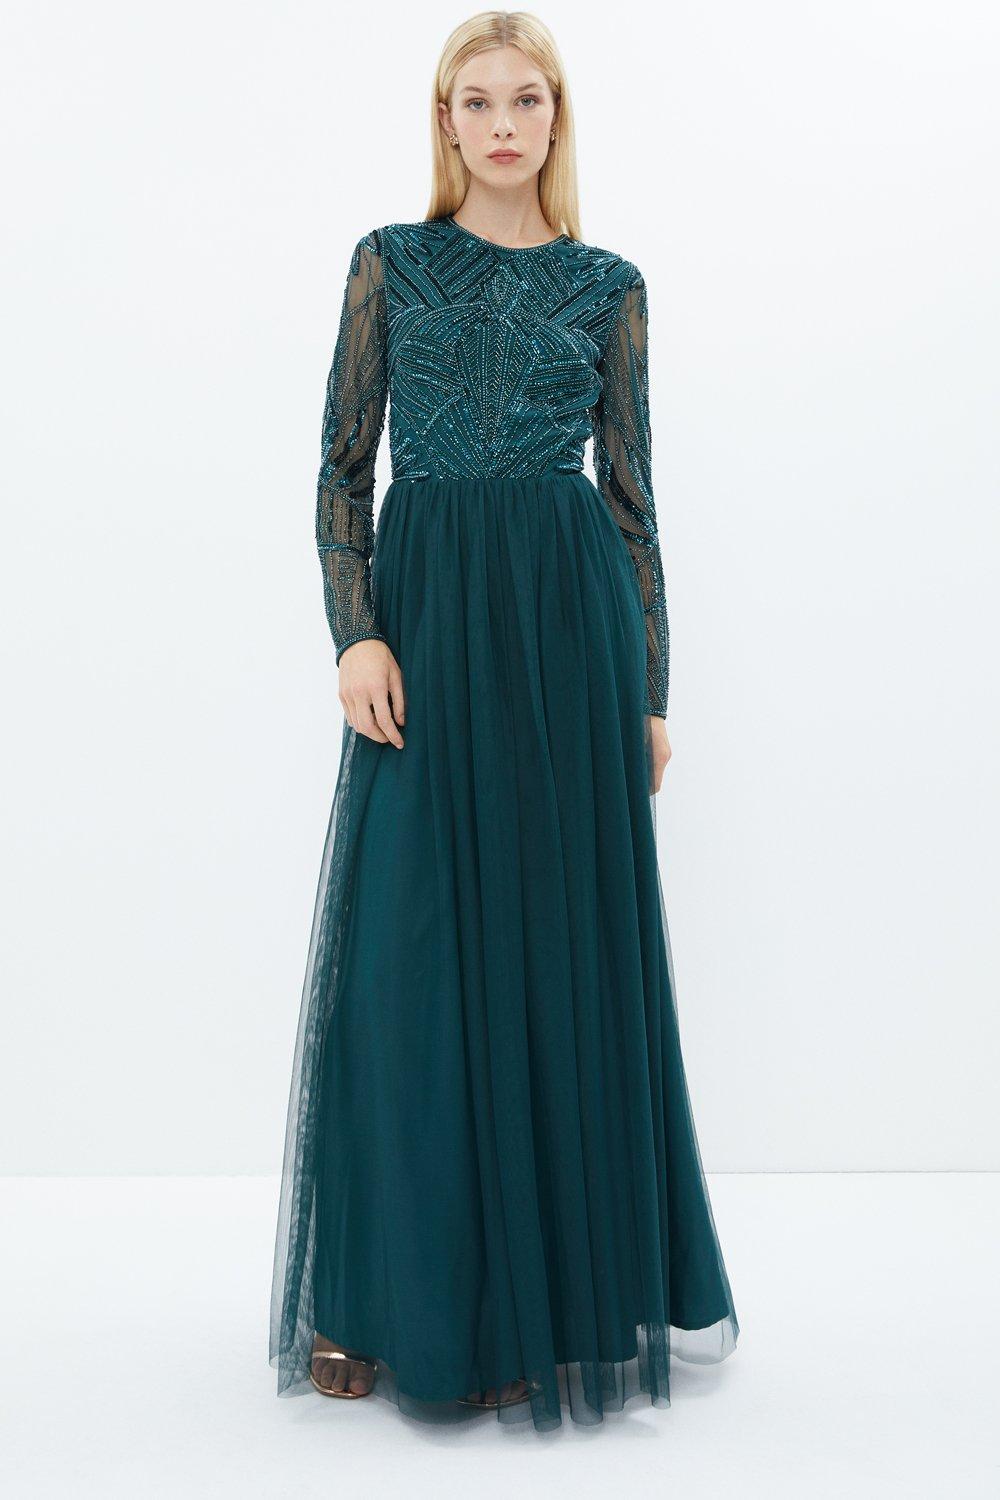 Embellished Bodice Long Sleeve Maxi Dress - Green